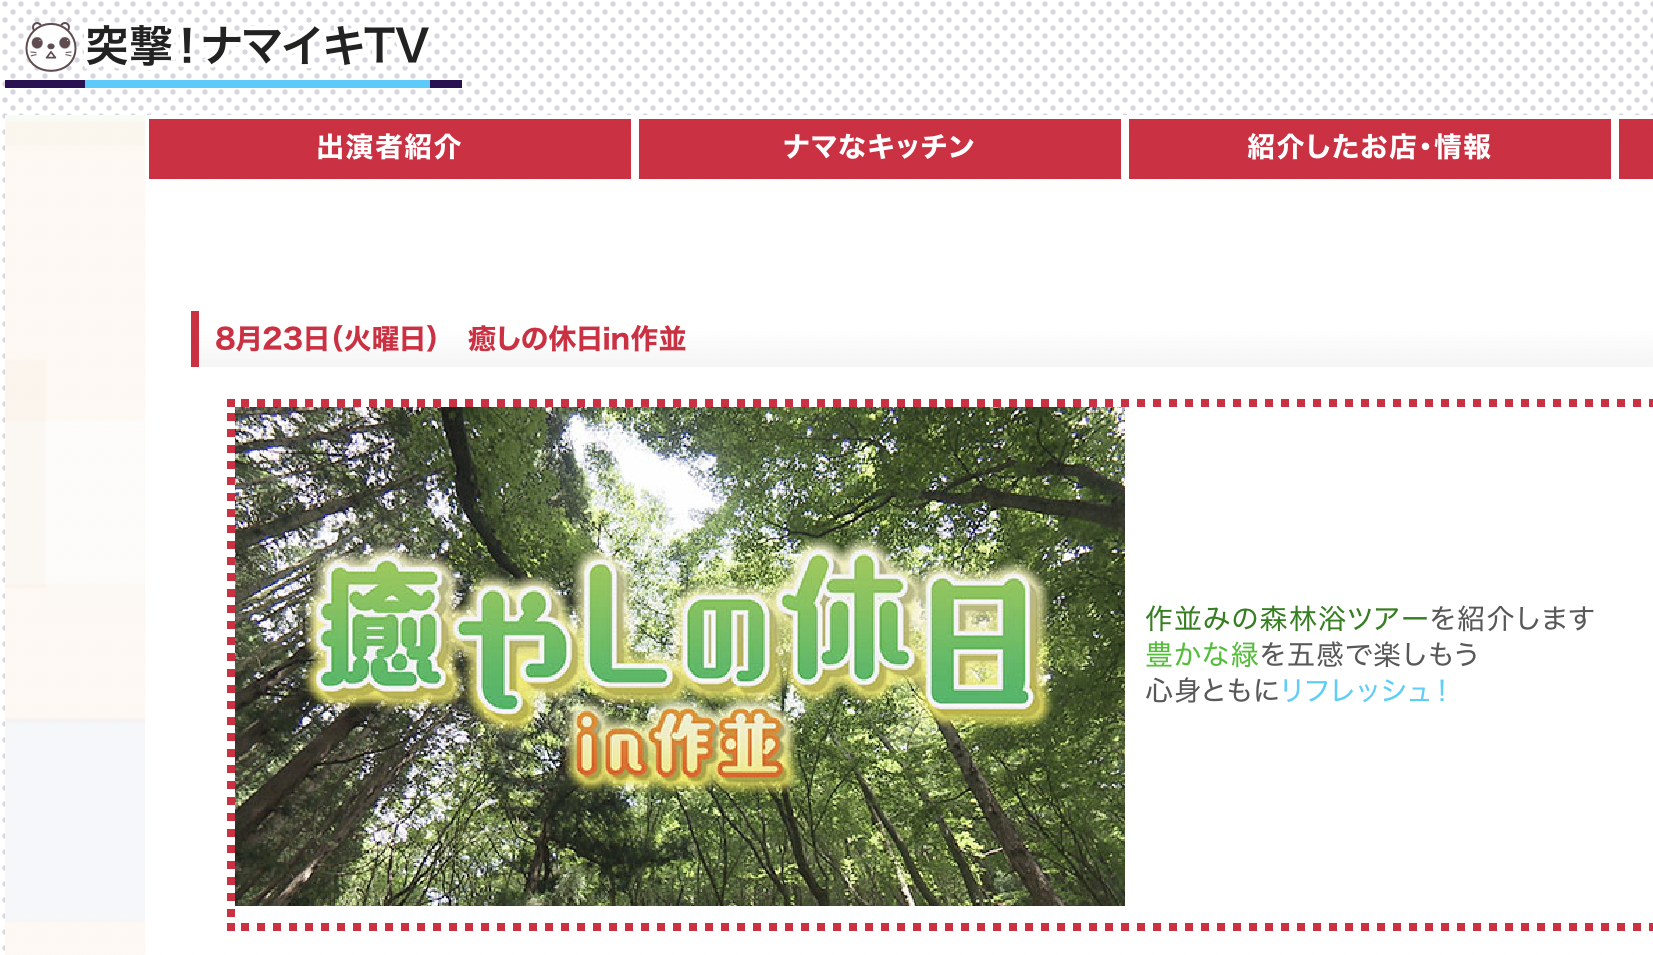 khb東日本放送『突撃！ナマイキTV』の「特集 癒やしの休日in作並」で紹介されました。【2022.8.23.放送】